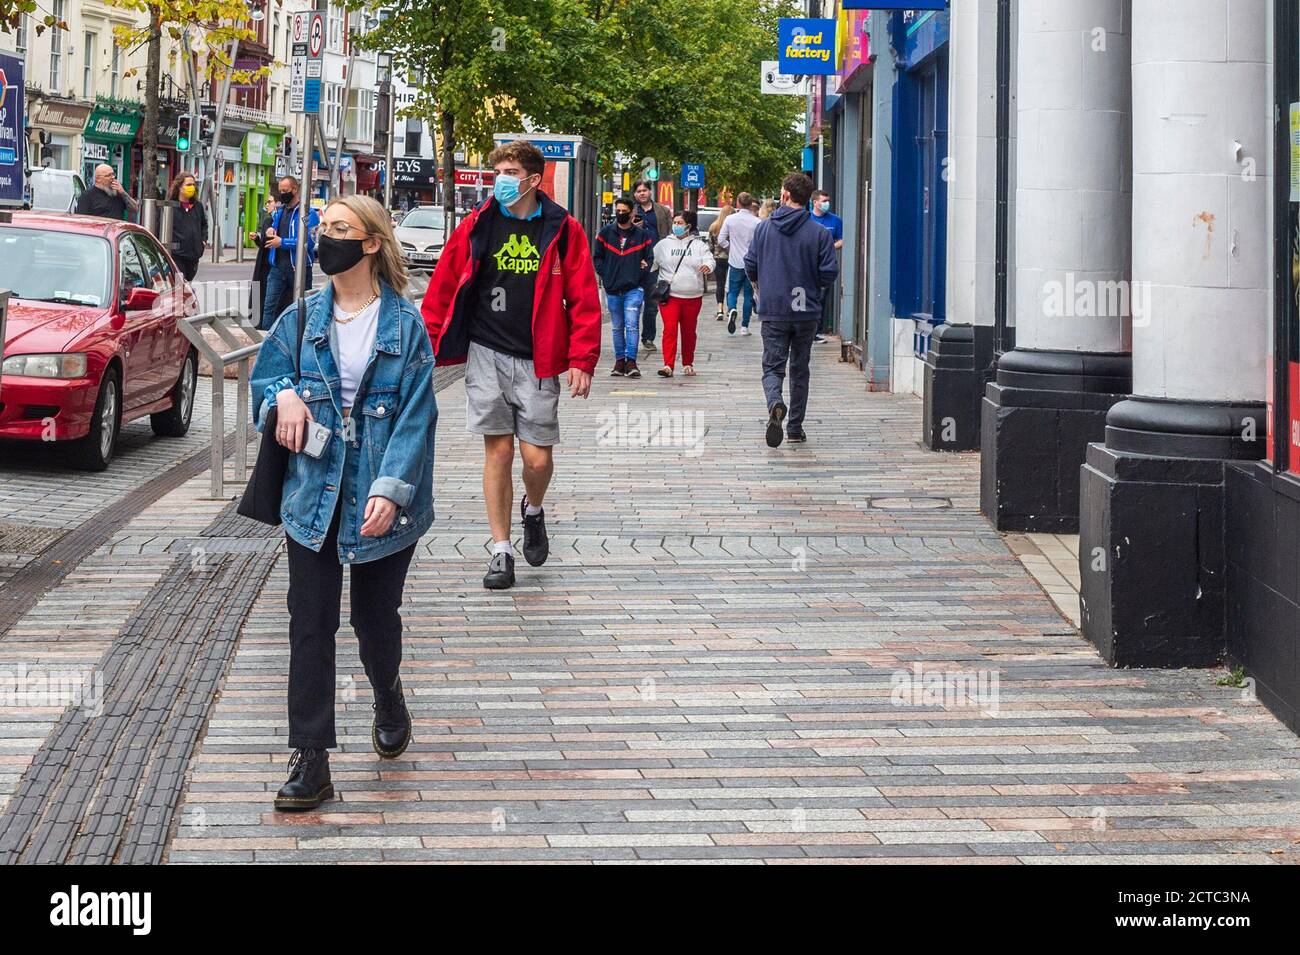 Cork, Irland. September 2020. Die Leute laufen entlang der Patrick Street in Cork City - einige mit Gesichtsmasken und andere ohne. COVID-19-Fälle nehmen landesweit zu, und es wird befürchtet, dass weitere Einschränkungen eingeführt werden. Quelle: AG News/Alamy Live News Stockfoto